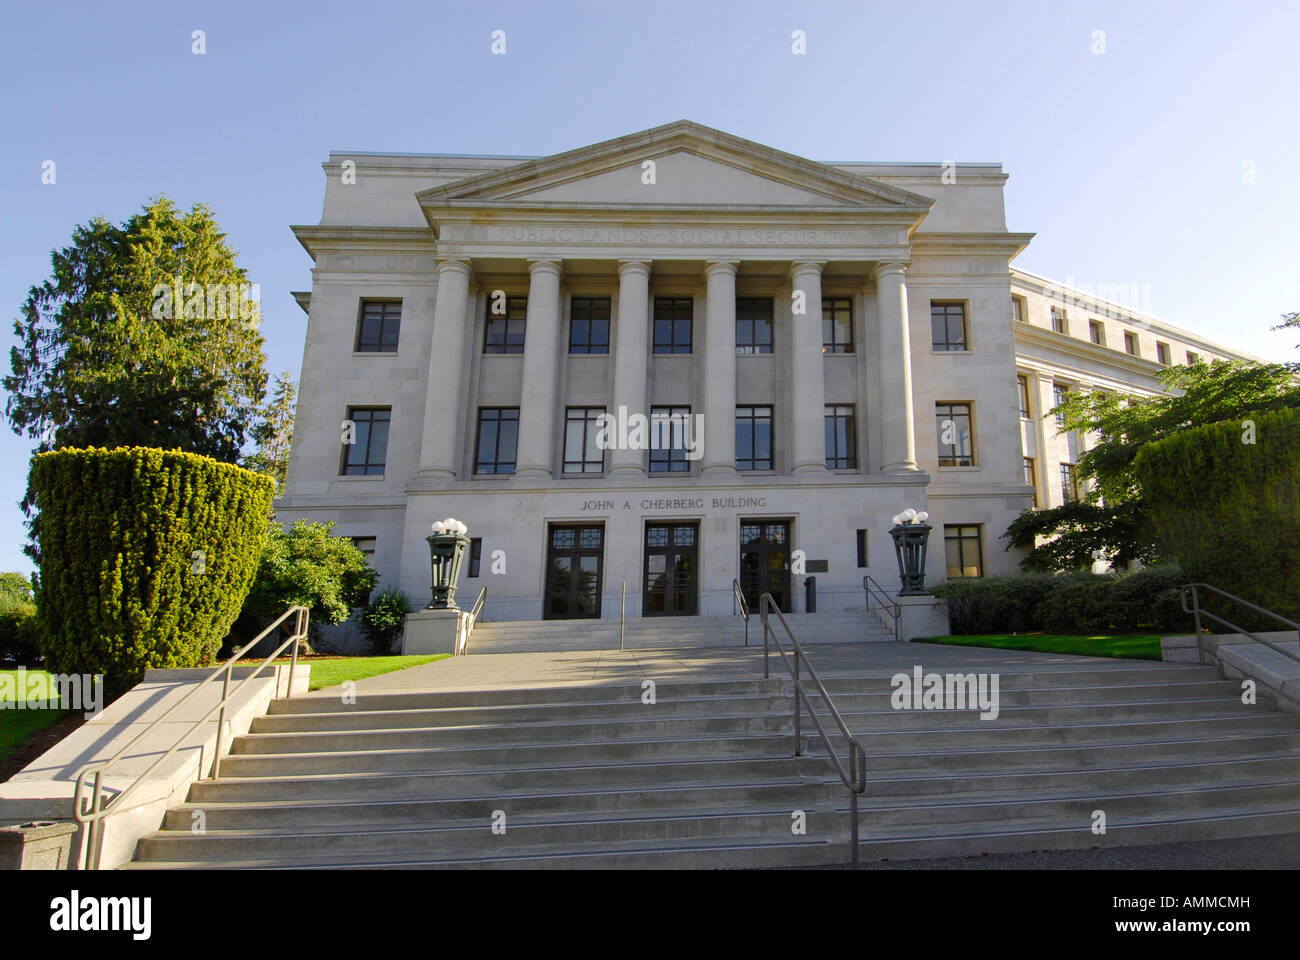 Giovanni edificio Cherberg Olympia Washington WA US Stati Uniti legislatura diritto legislativo governo legale capitol motivi Foto Stock